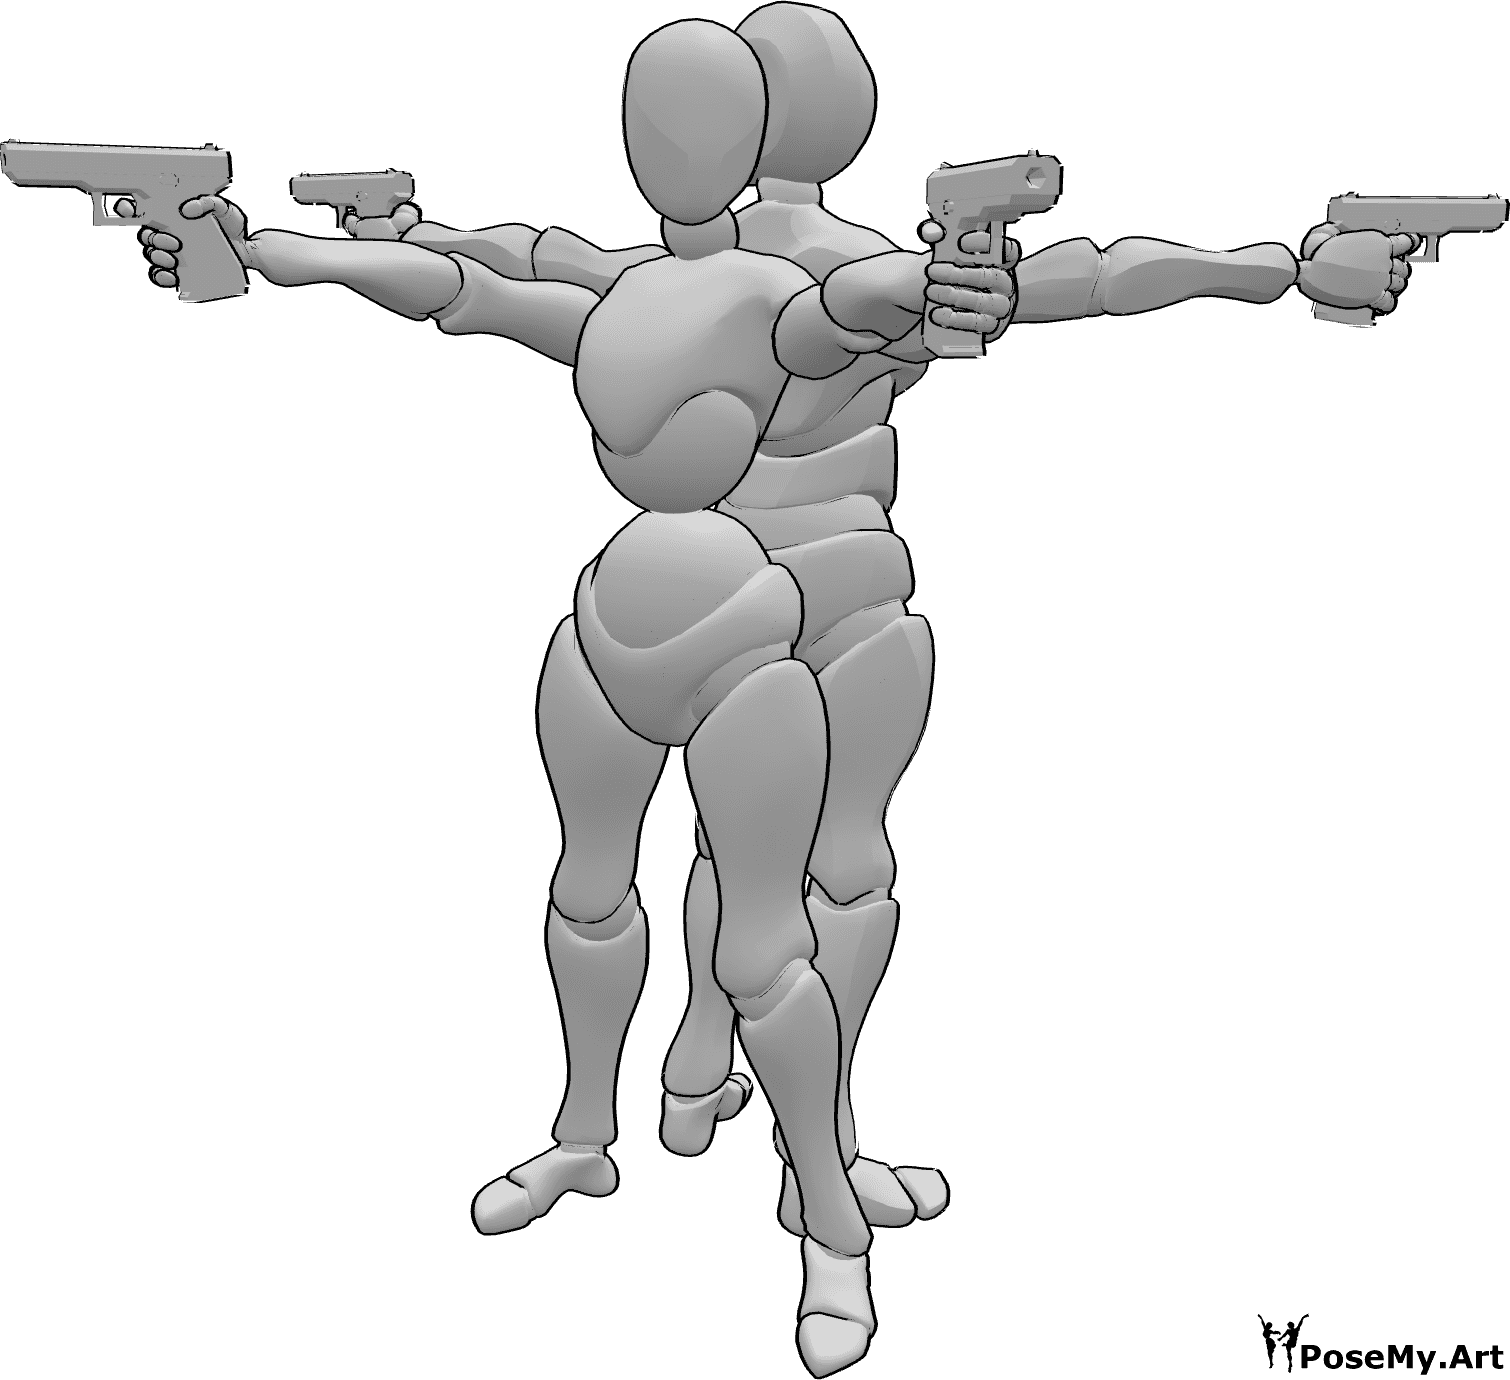 Referência de poses- Pose de armas masculinas femininas - Mulher e homem de costas com pose de armas